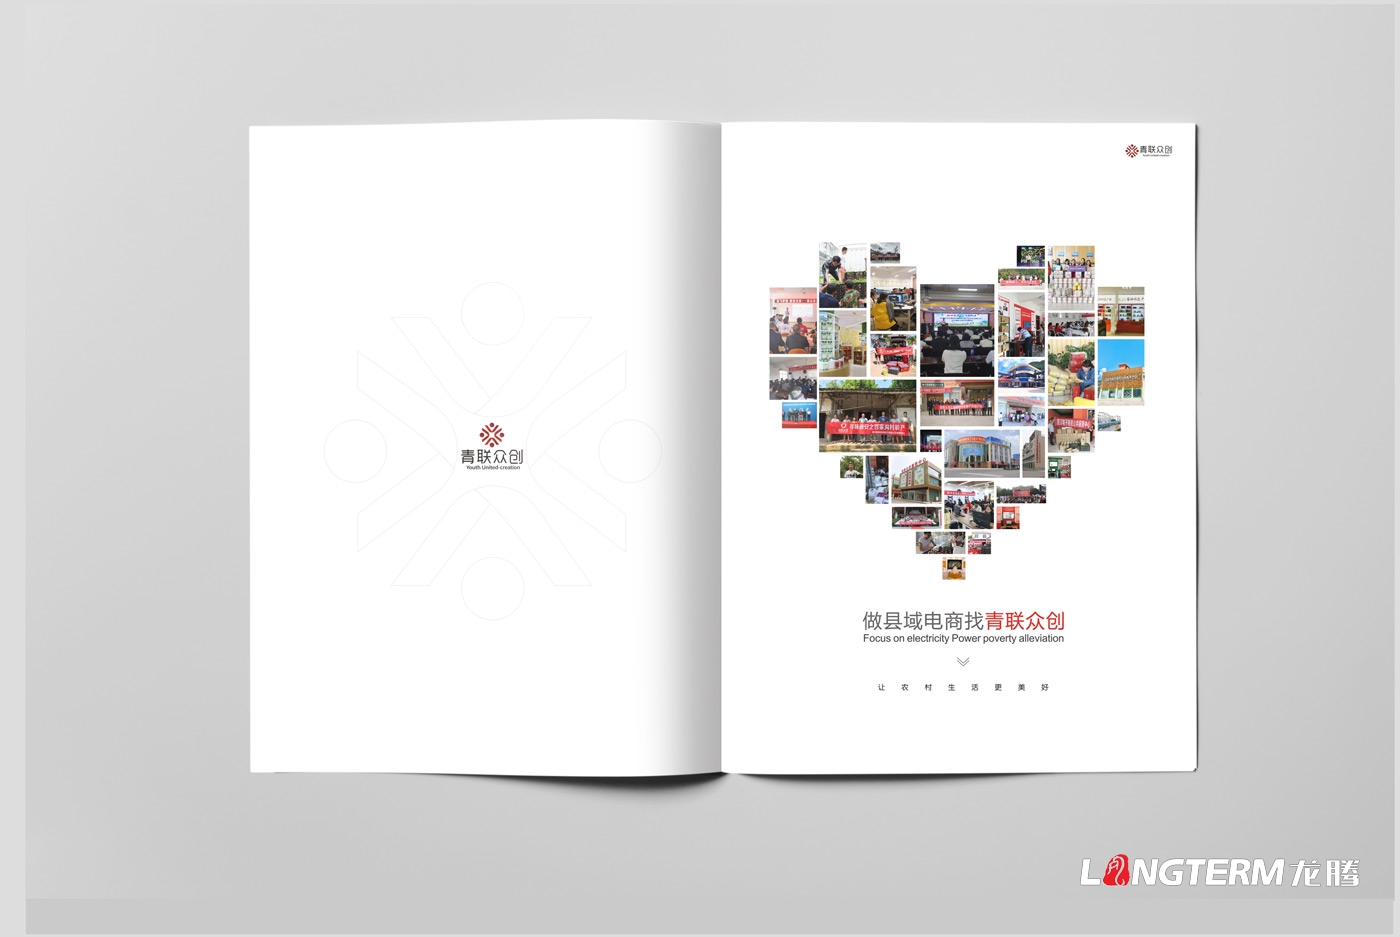 四川省青联众创电子商务有限公司形象画册设计